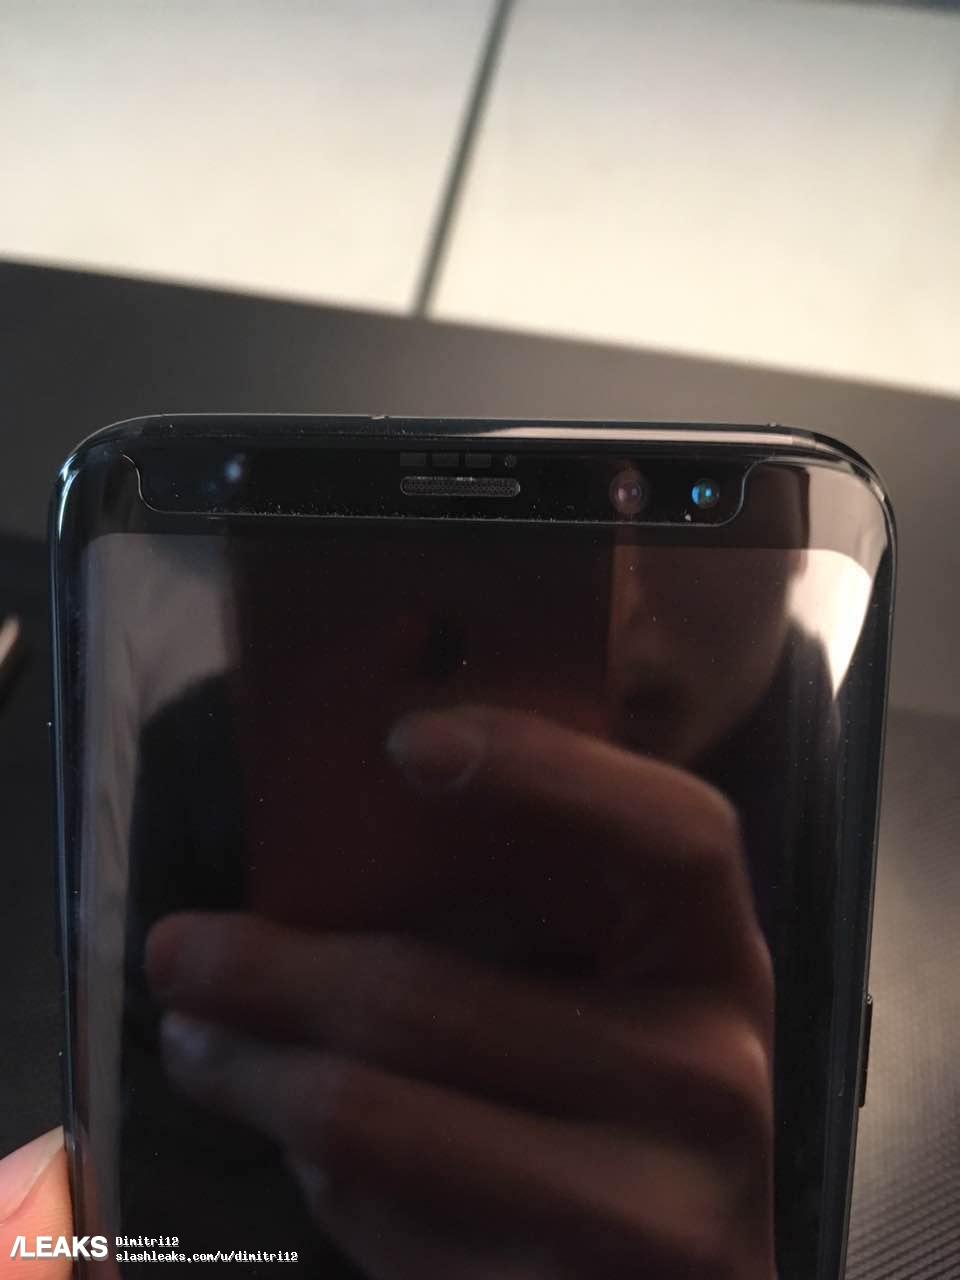 Immagini Samsung Galaxy S8 e S8 Plus 1